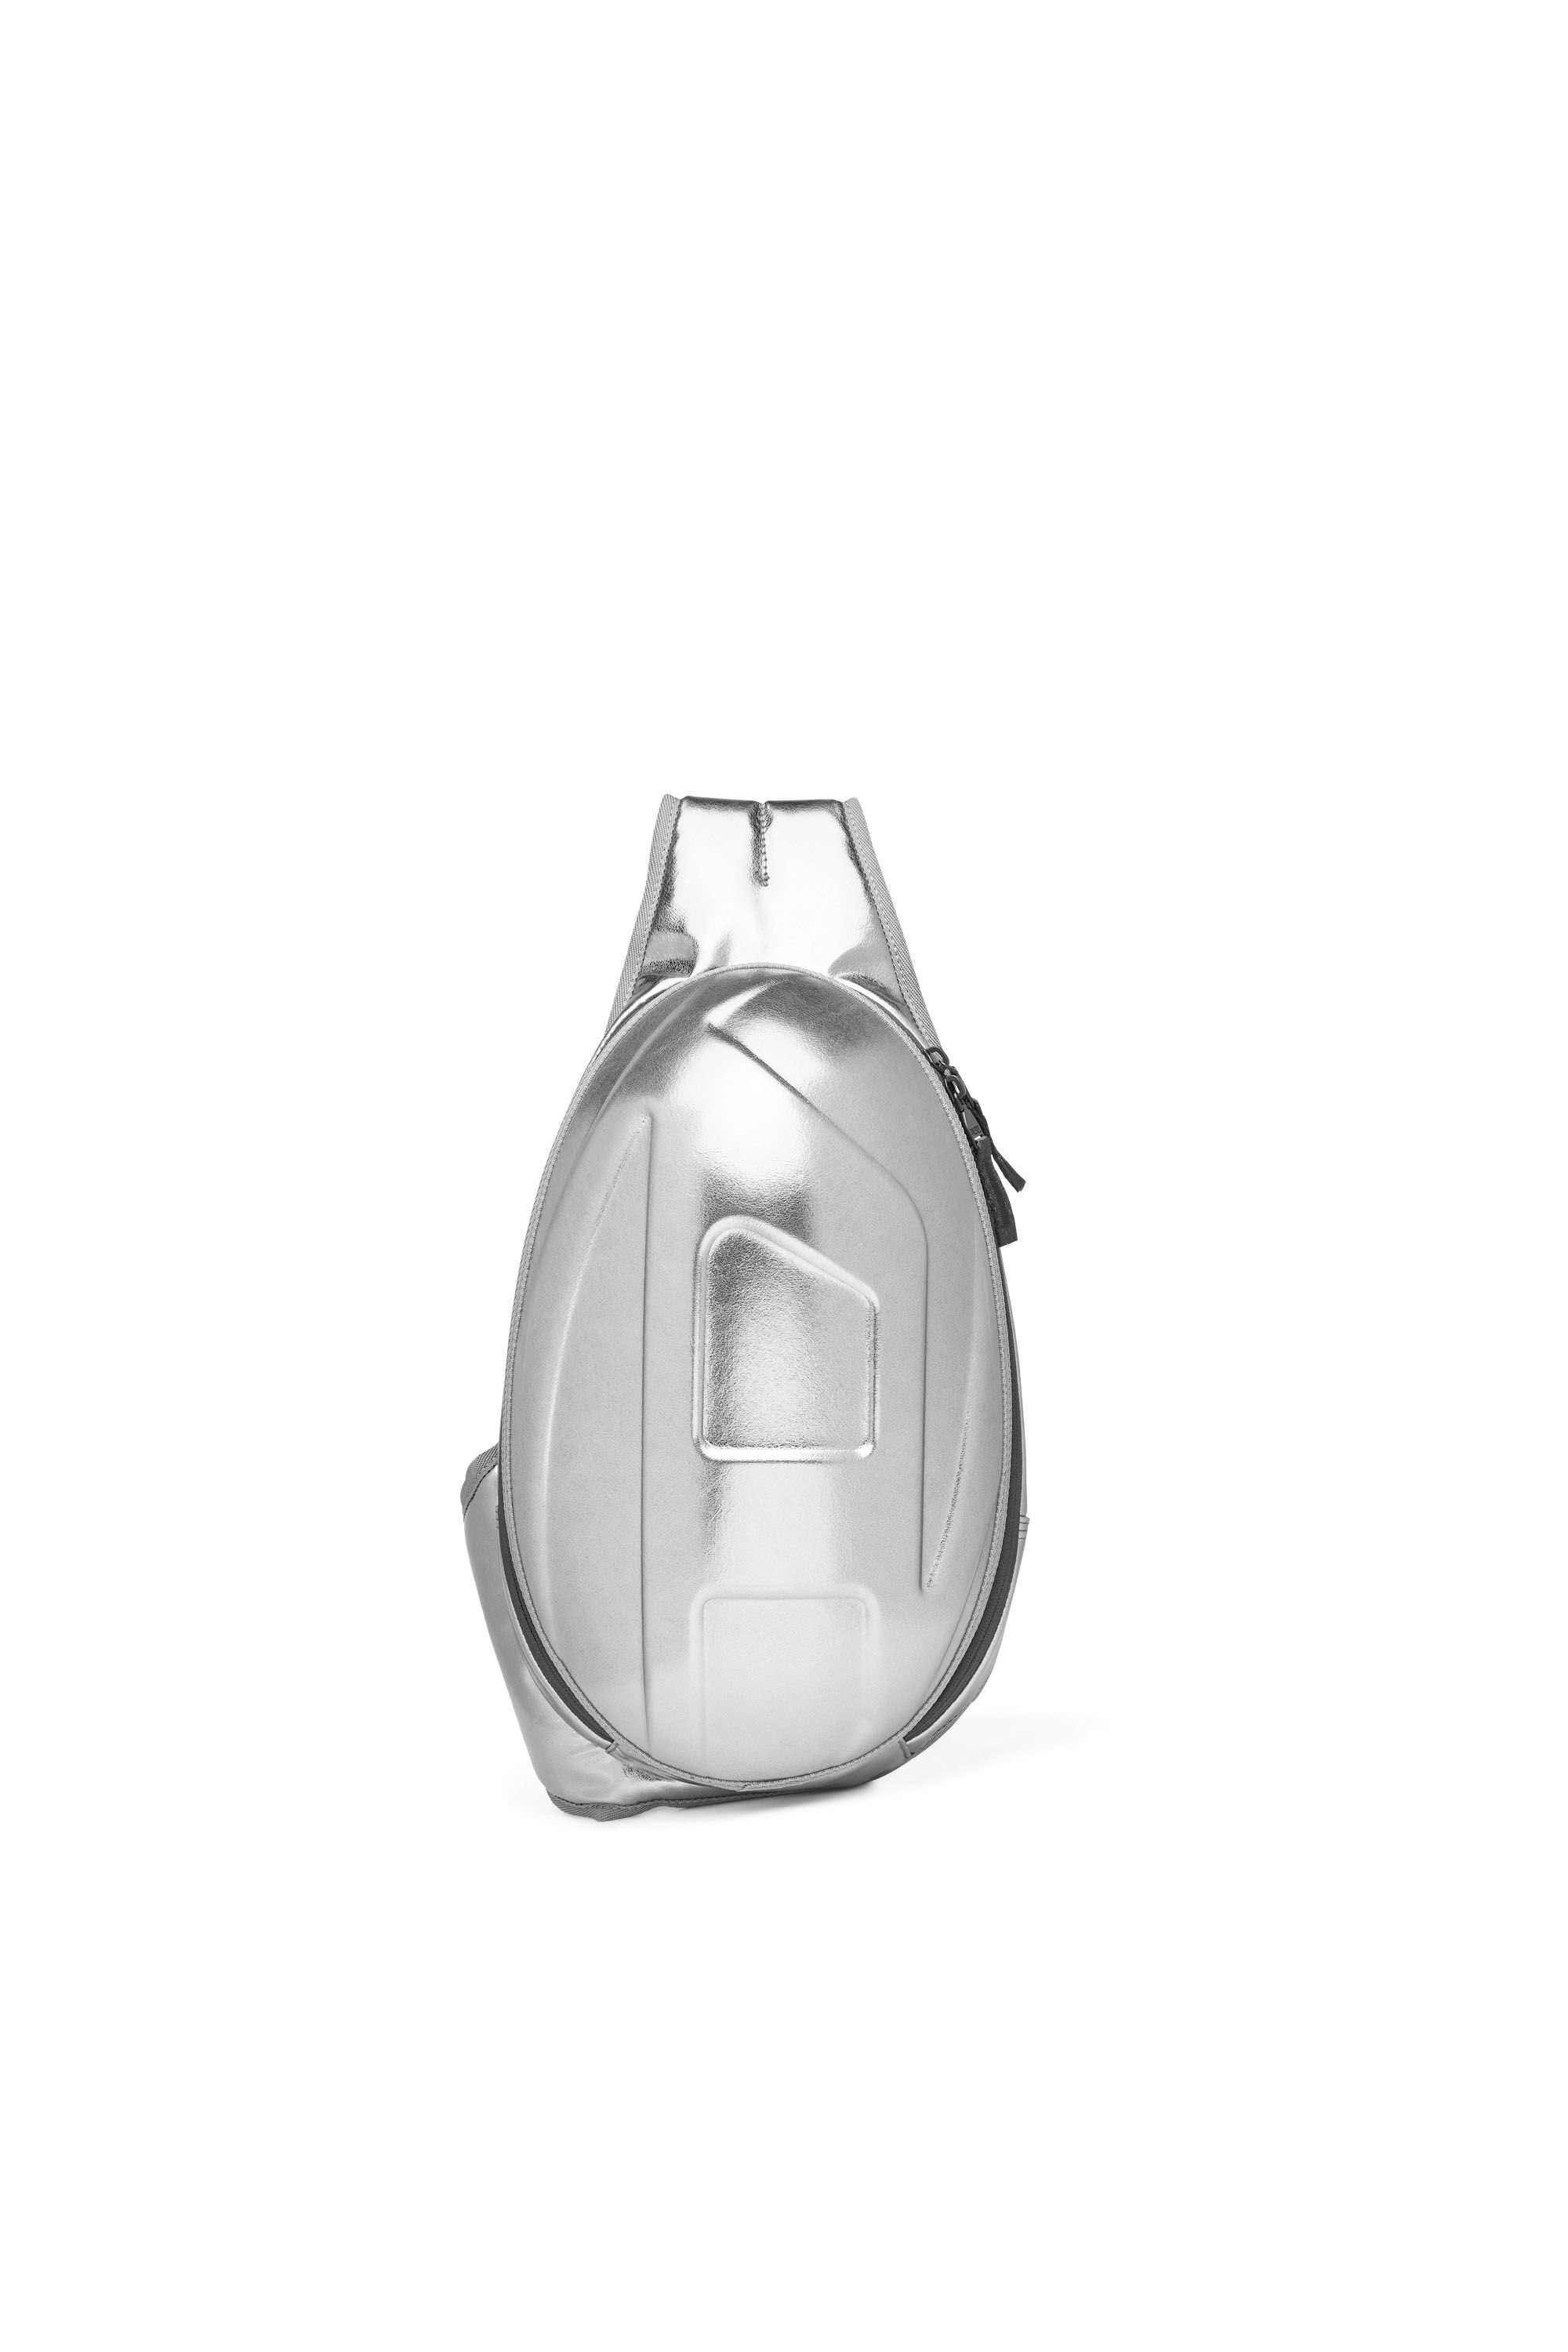 【新品未使用】ディーゼル DIESEL 1dr pod sling bag